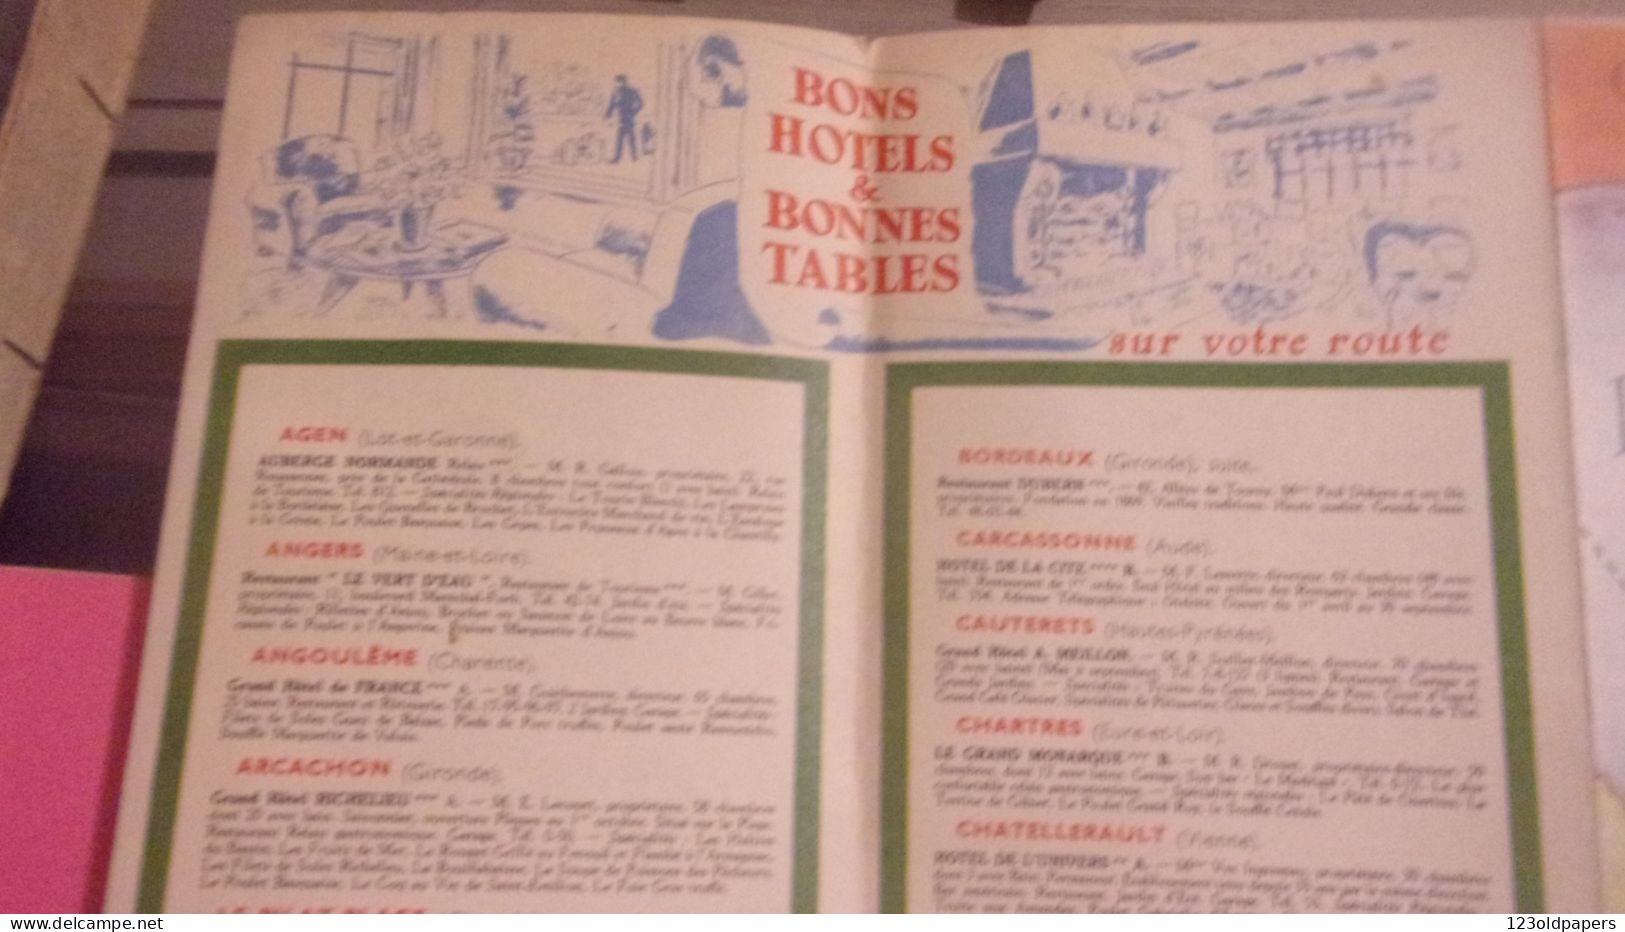 1956 LA ROUTE DES PYRENEES  PAR LES CHATEAUX DE LA LOIRE  PORTUGAL ESPAGNE MAROC ILLUSTRE HOTEL COGNAC RESTAURANT - Toeristische Brochures